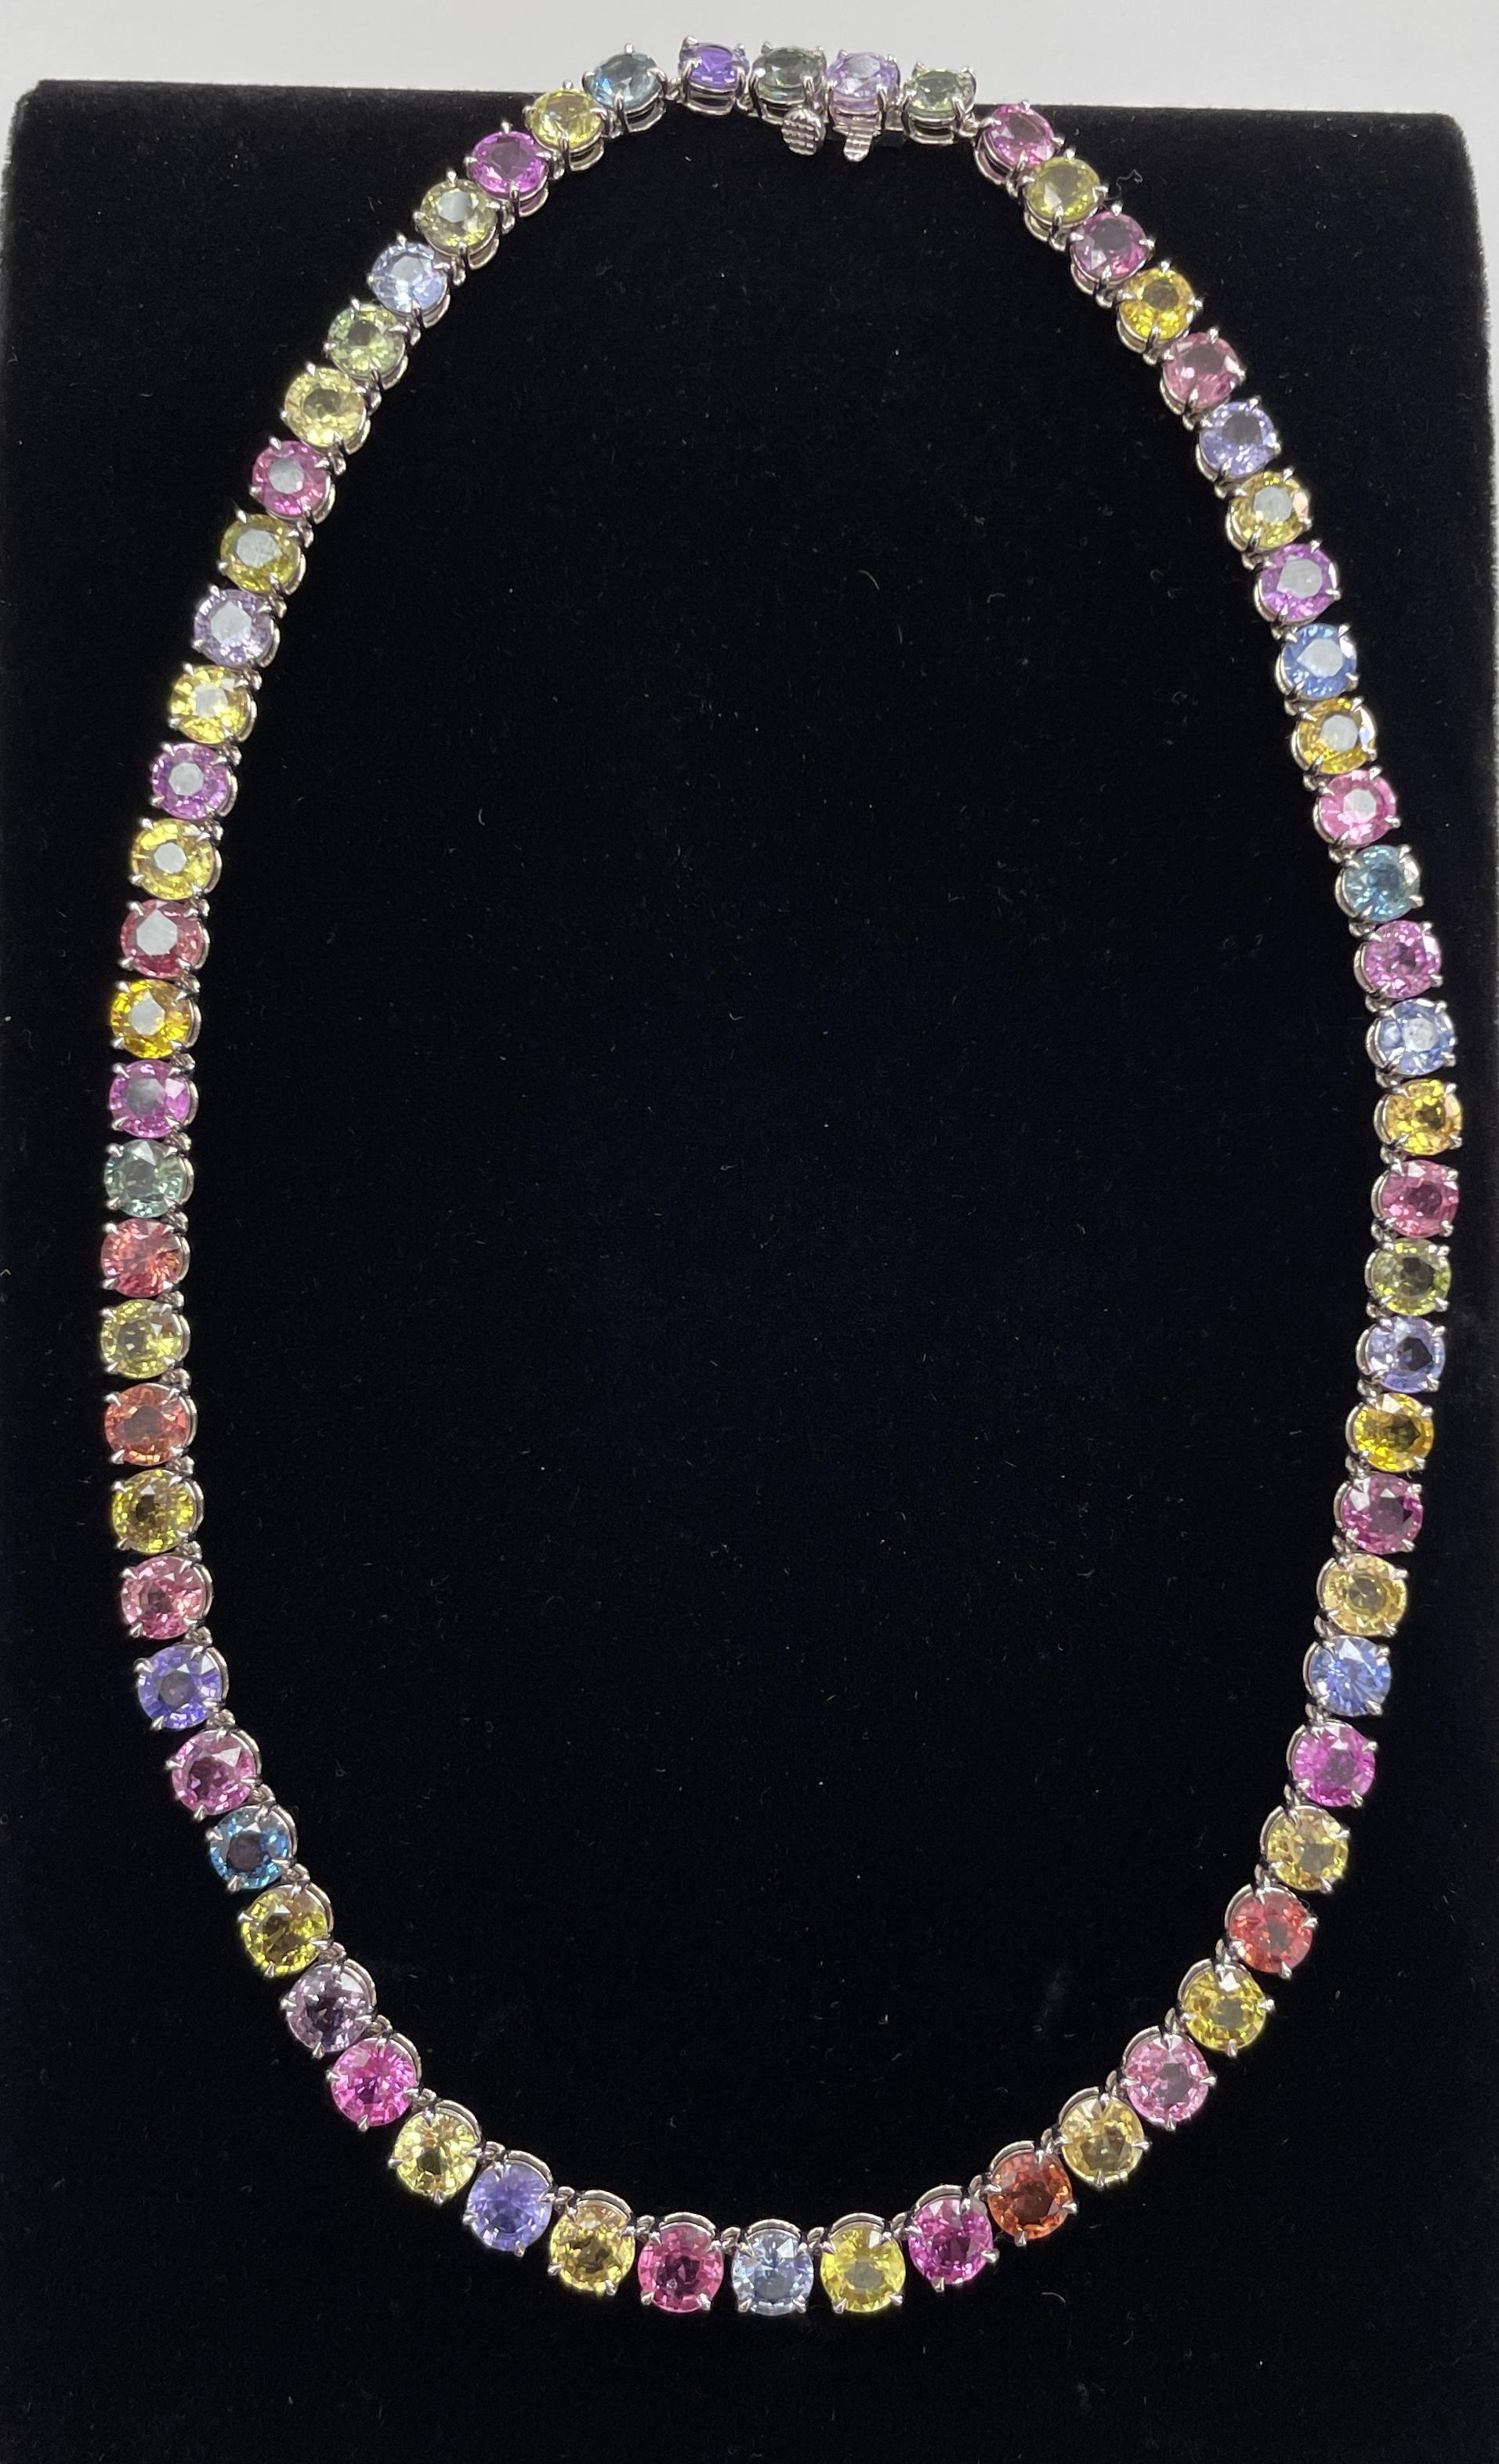 Eine mehrfarbige natürliche Saphir-Halskette; achtundsechzig 6MM runde, pastellfarbene Saphire, die nicht wärmebehandelt sind, mit einem Gewicht von 74,87Ct, gefasst in 18K Weißgold. SCHÖN für jede Gelegenheit!